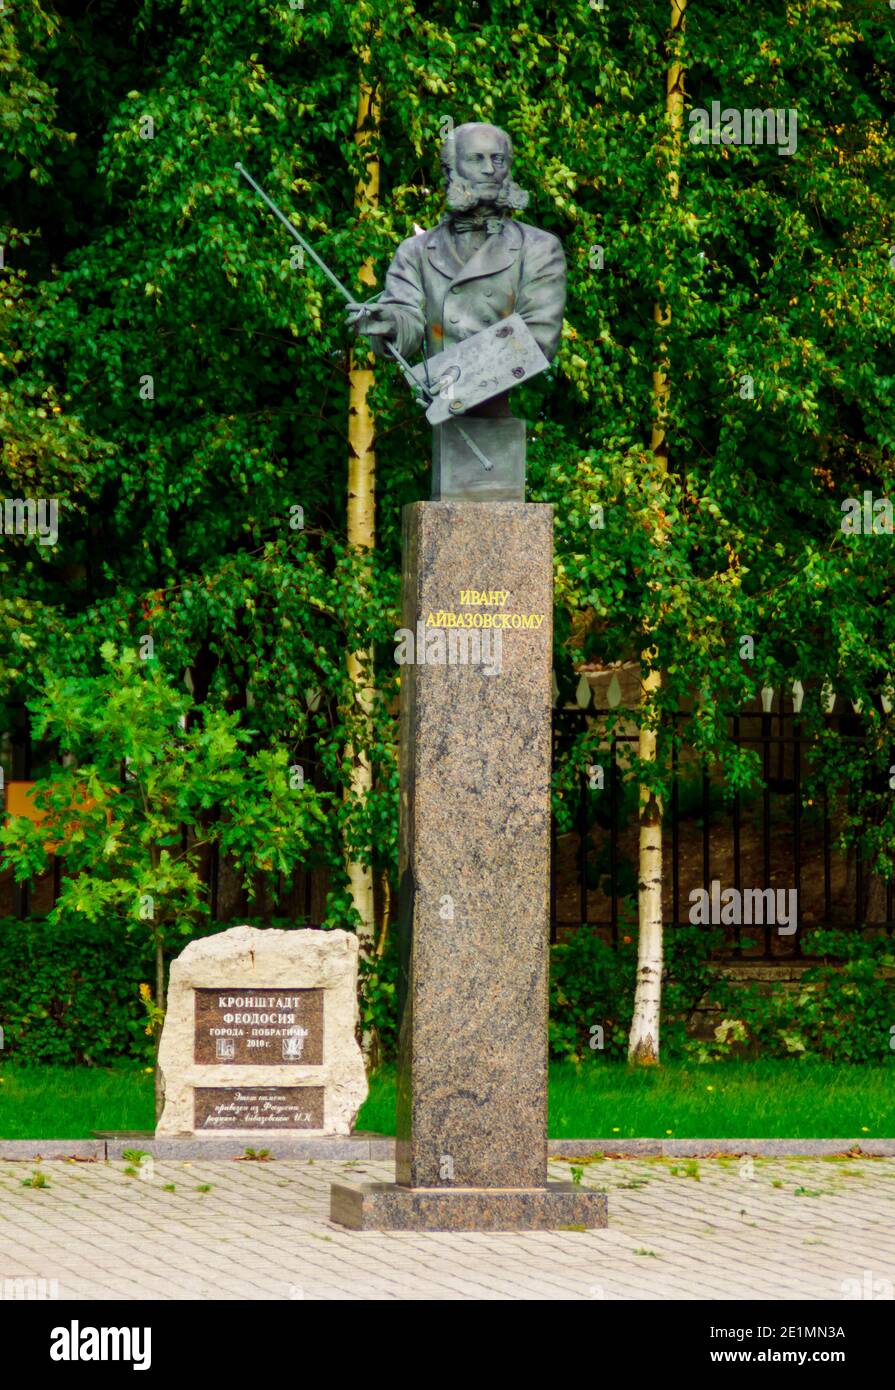 Kronshtadt, Sankt Petersburg, Russland - 5. September 2020: Denkmal für Aivazovsky, einen bekannten russischen Marinemaler Stockfoto